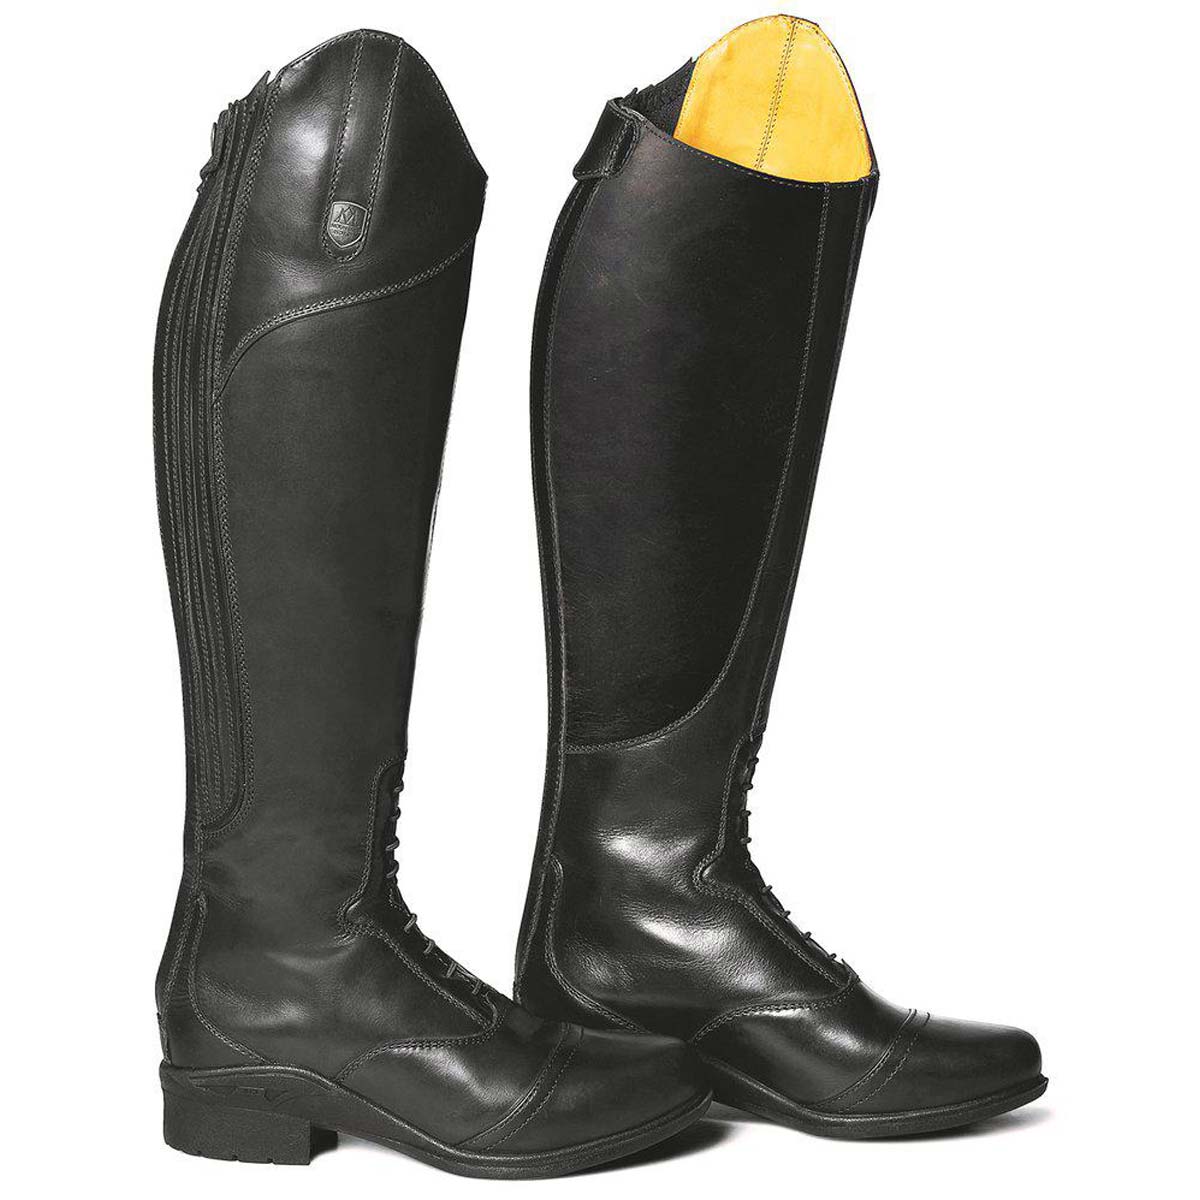 50% OFF - MOUNTAIN HORSE Aurora Tall Boots - Black - Size: UK 6.5 (EU 40) Short / Regular